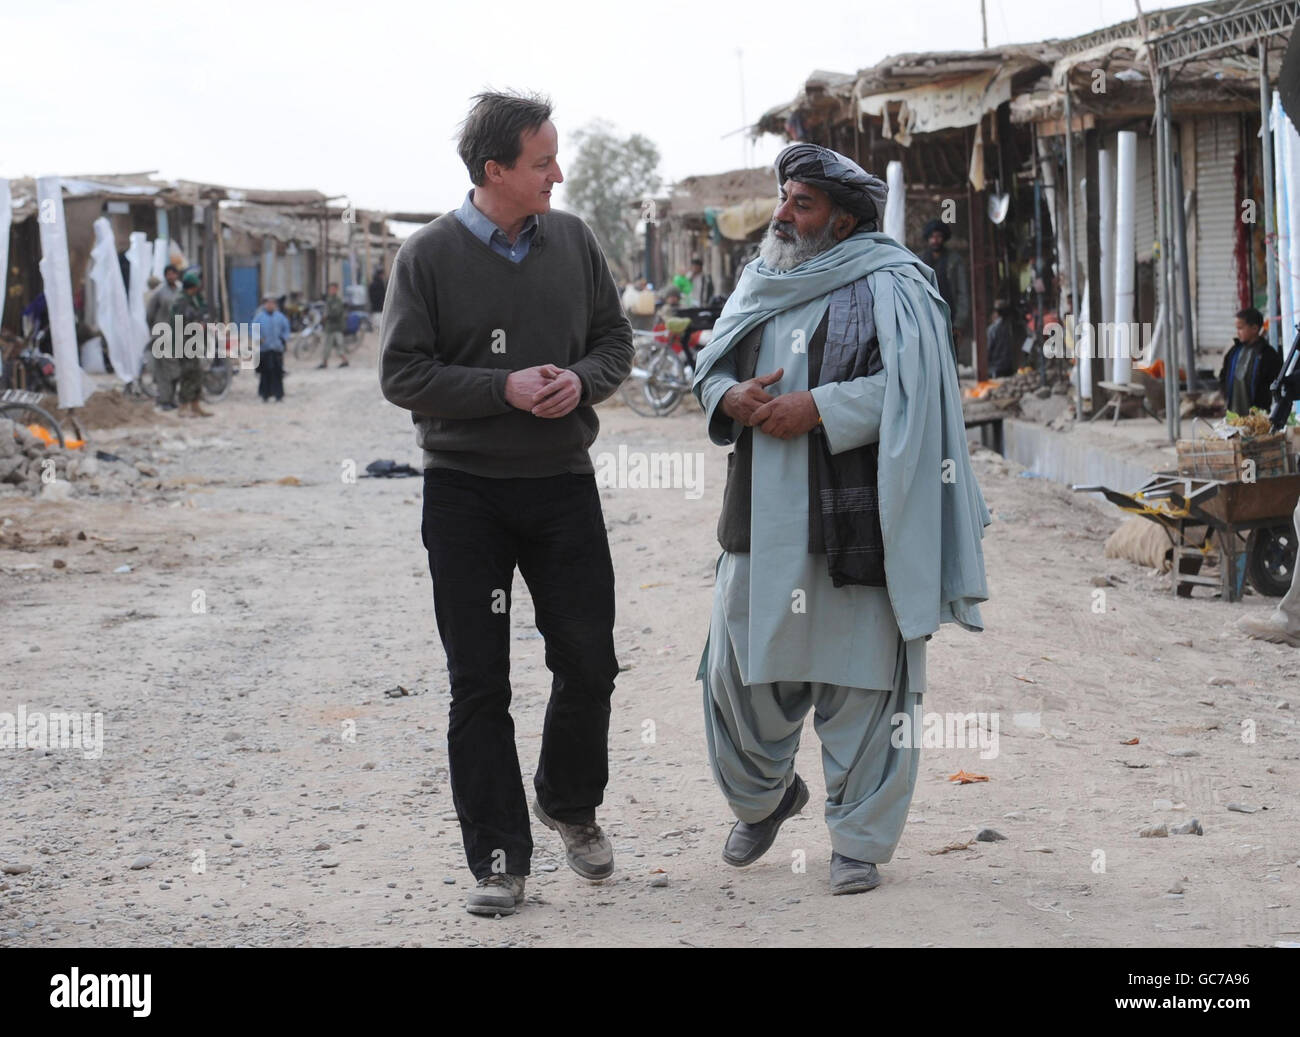 Le chef du Parti conservateur David Cameron visite le bazar du centre du quartier nad-e-Ali avec le gouverneur Habibullah et rencontre les gens locaux où 53 nouvelles boutiques doivent être construites avec un marché couvert financé par le gouvernement britannique. Banque D'Images